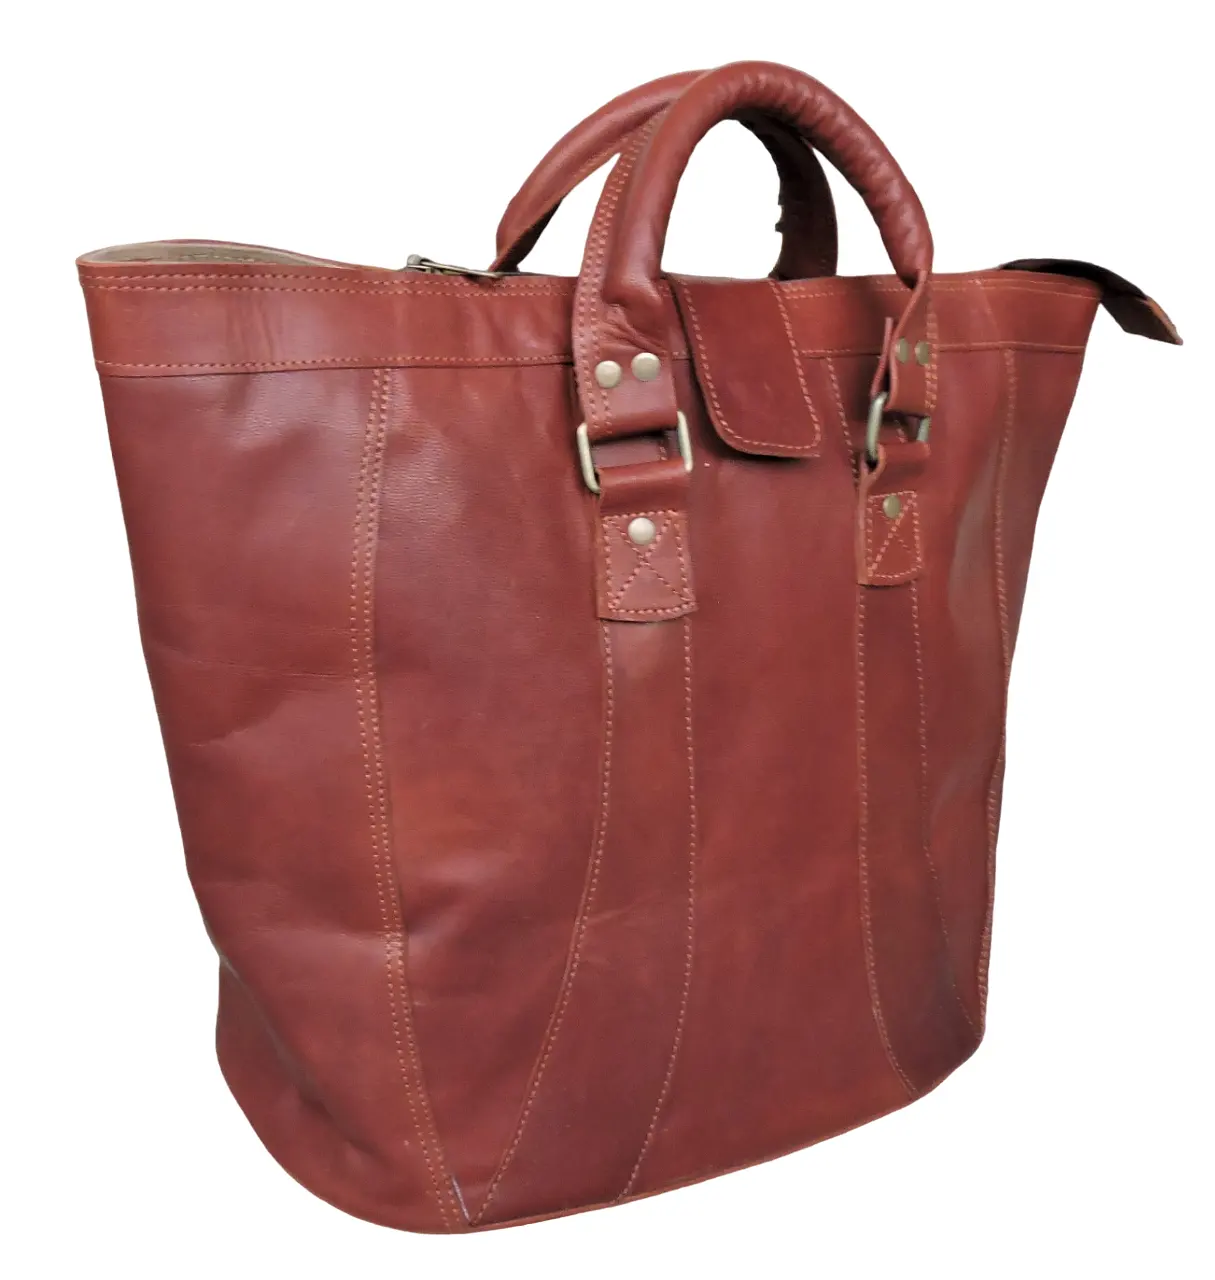 Vintage Genuine Leather Ladies Tote Bag Hobo Cross body Shoulder Bag